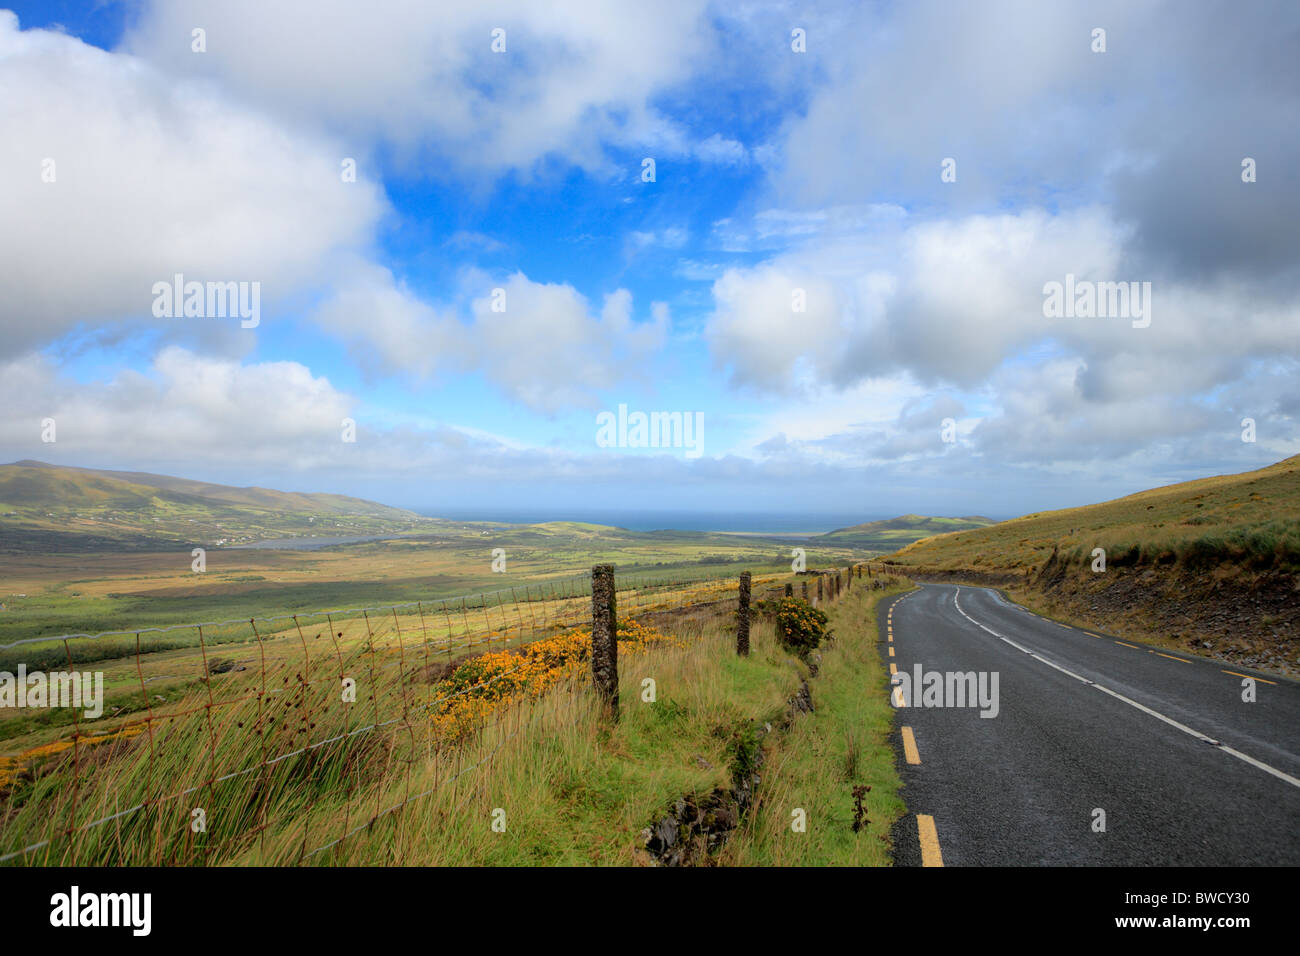 Brandon bay, Dingle peninsula, Kerry county, Ireland Stock Photo